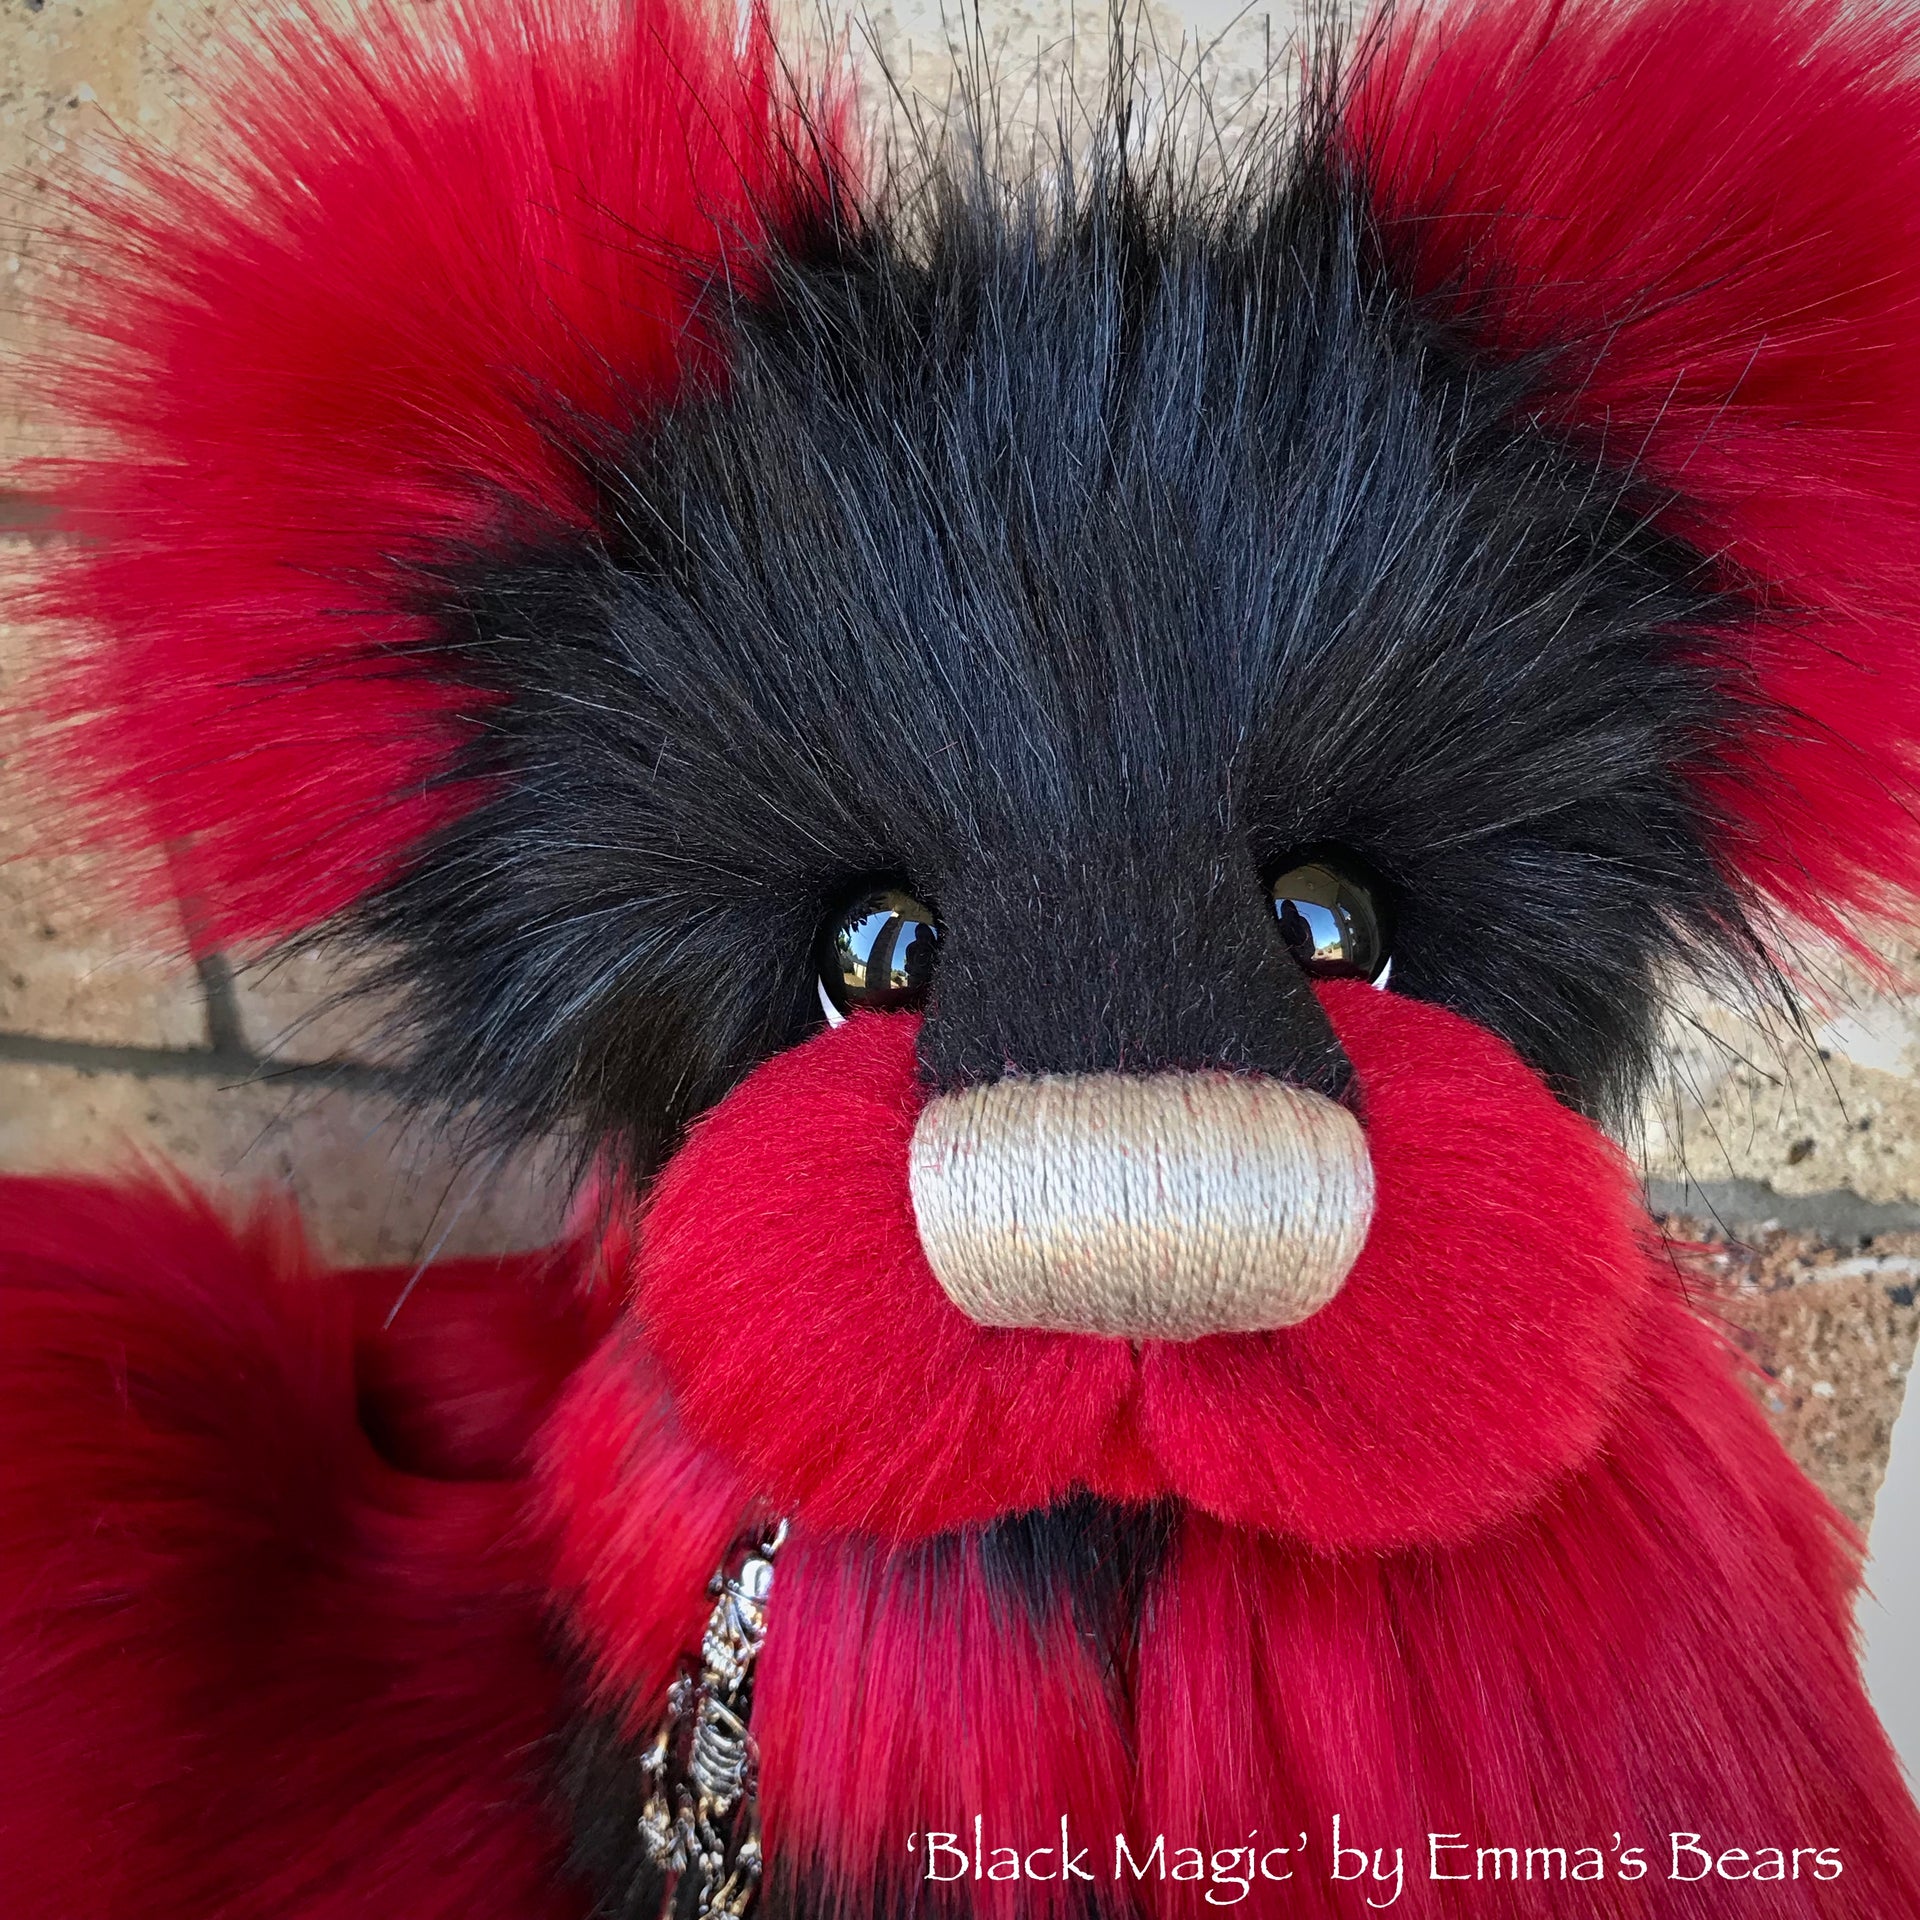 Black Magic - 16" faux fur Artist Bear by Emma's Bears - OOAK